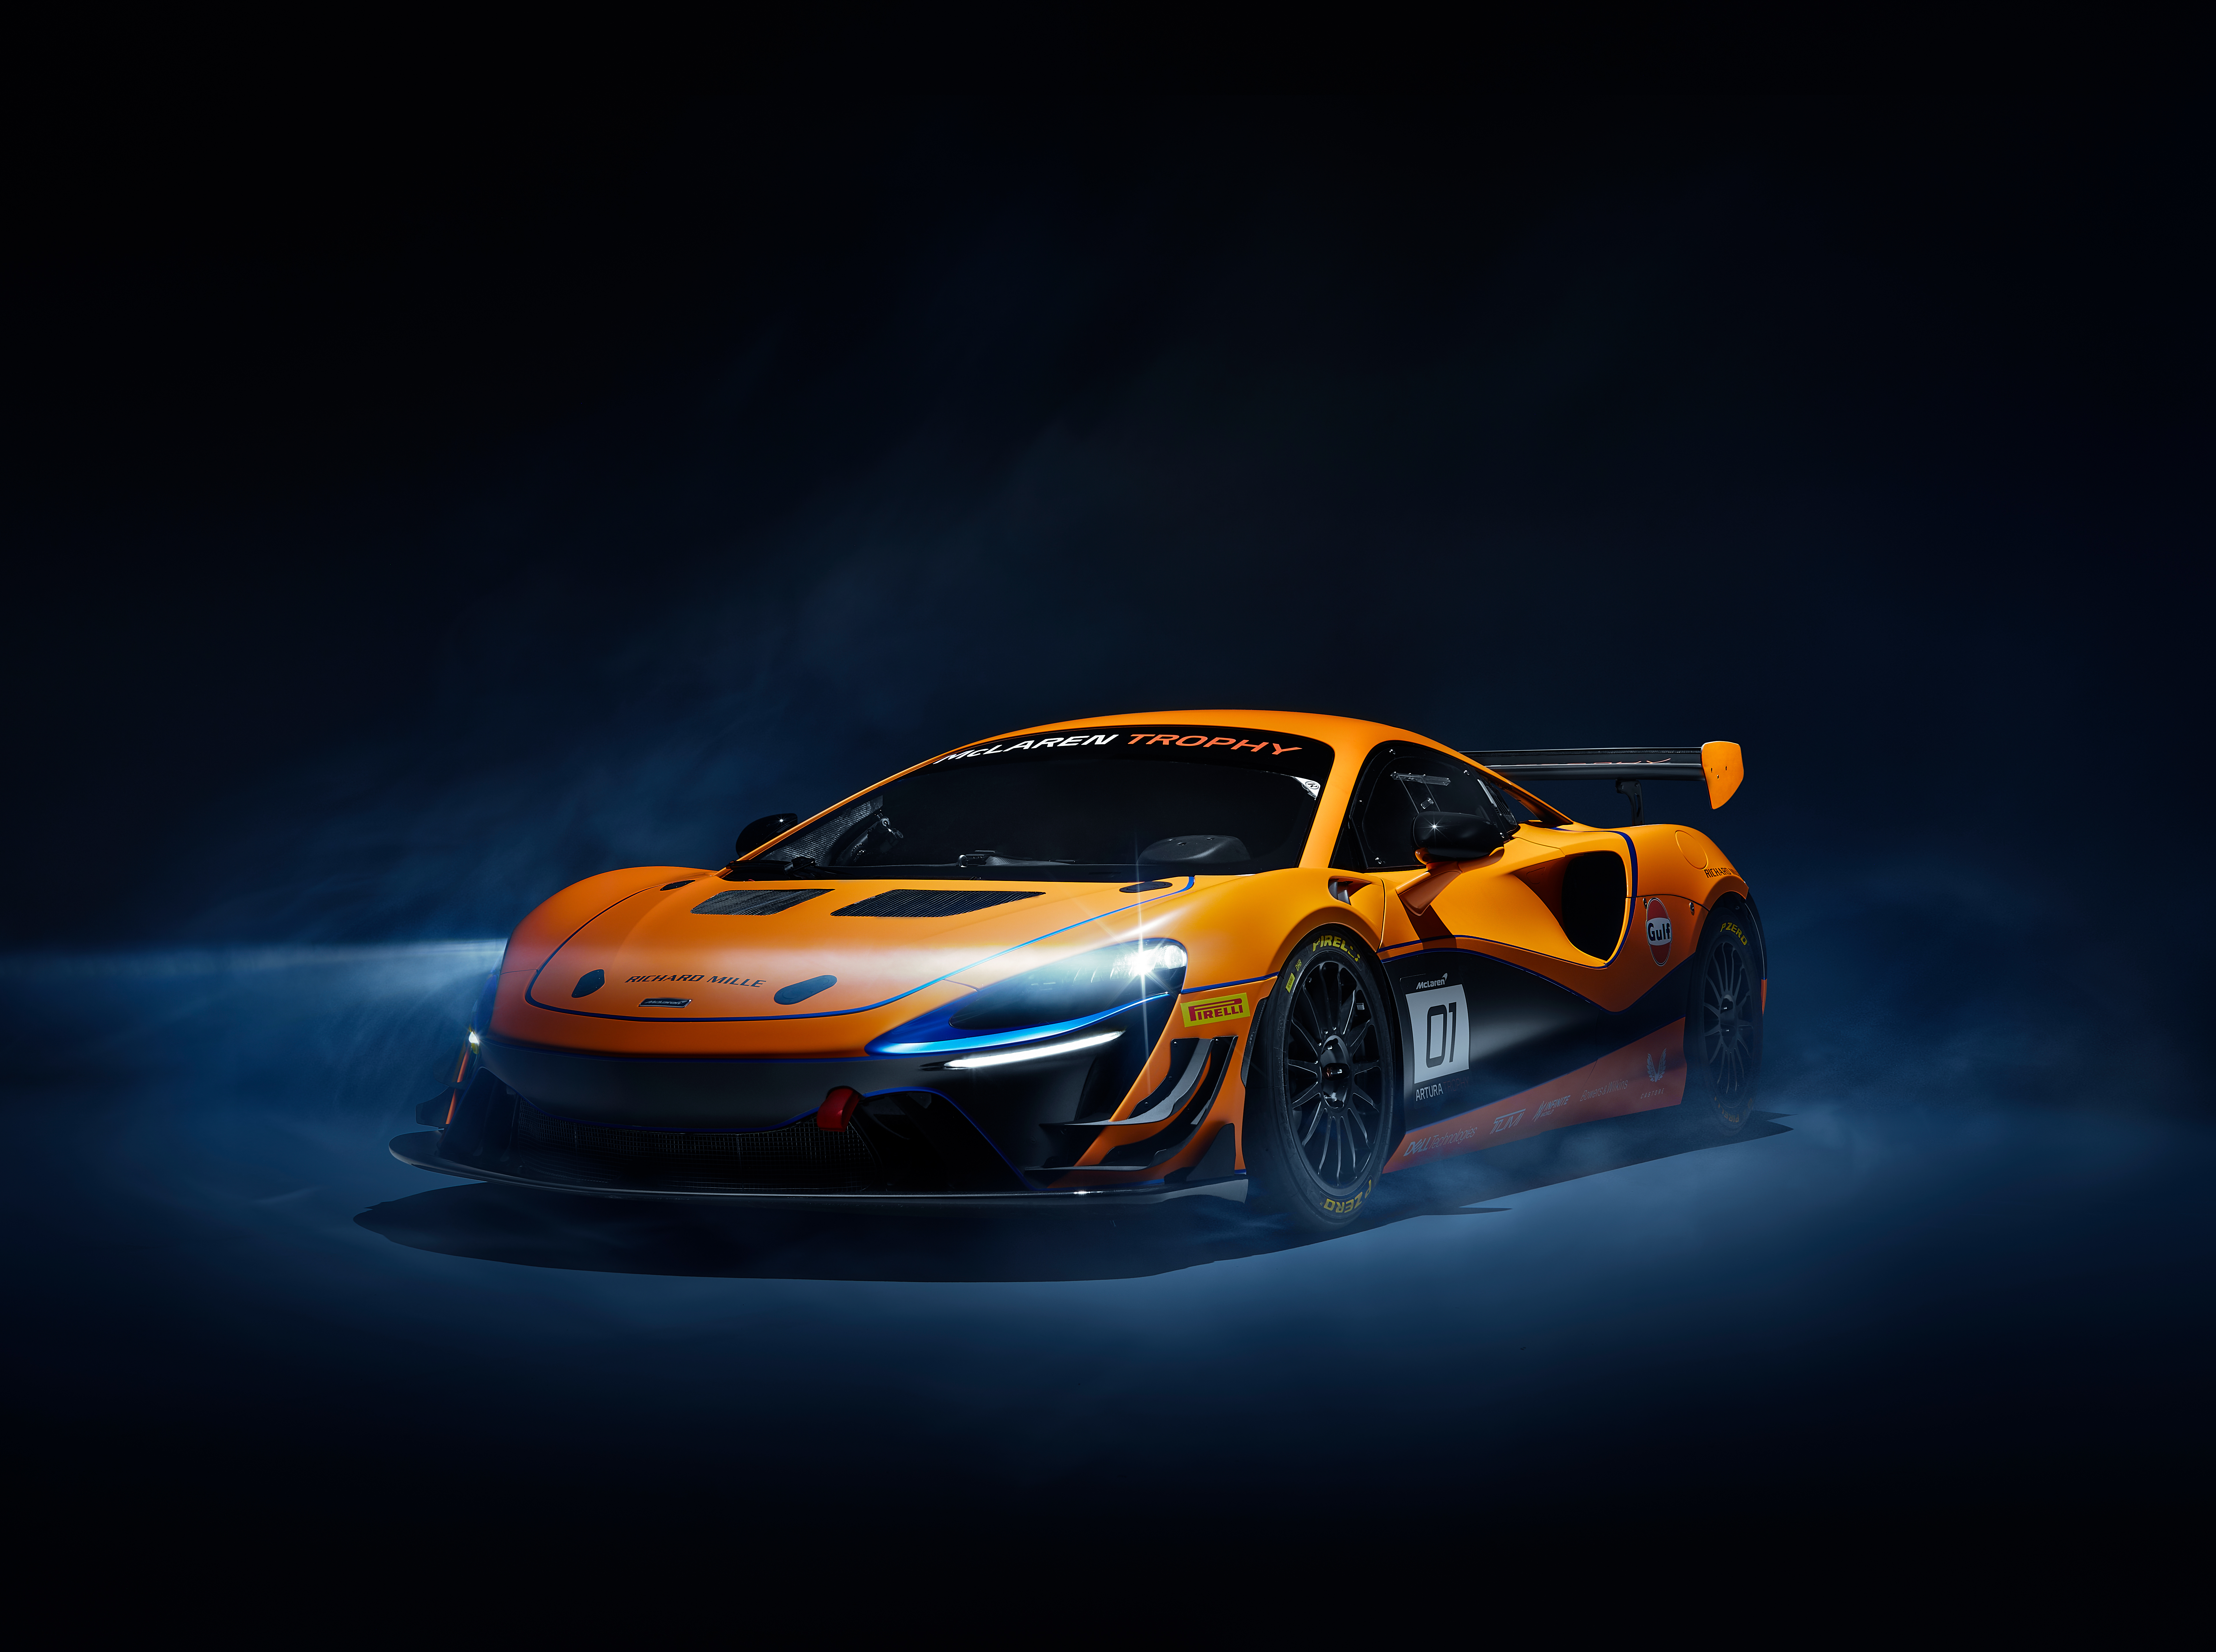 McLaren: Xe thể thao McLaren có thiết kế cực kỳ sang trọng và đẳng cấp. Hãy xem hình ảnh liên quan để cảm nhận nét độc đáo của McLaren và tìm hiểu thêm về các tính năng và công nghệ tiên tiến của chiếc xe này. Đây sẽ là một trải nghiệm tuyệt vời về một chiếc xe thể thao danh tiếng.